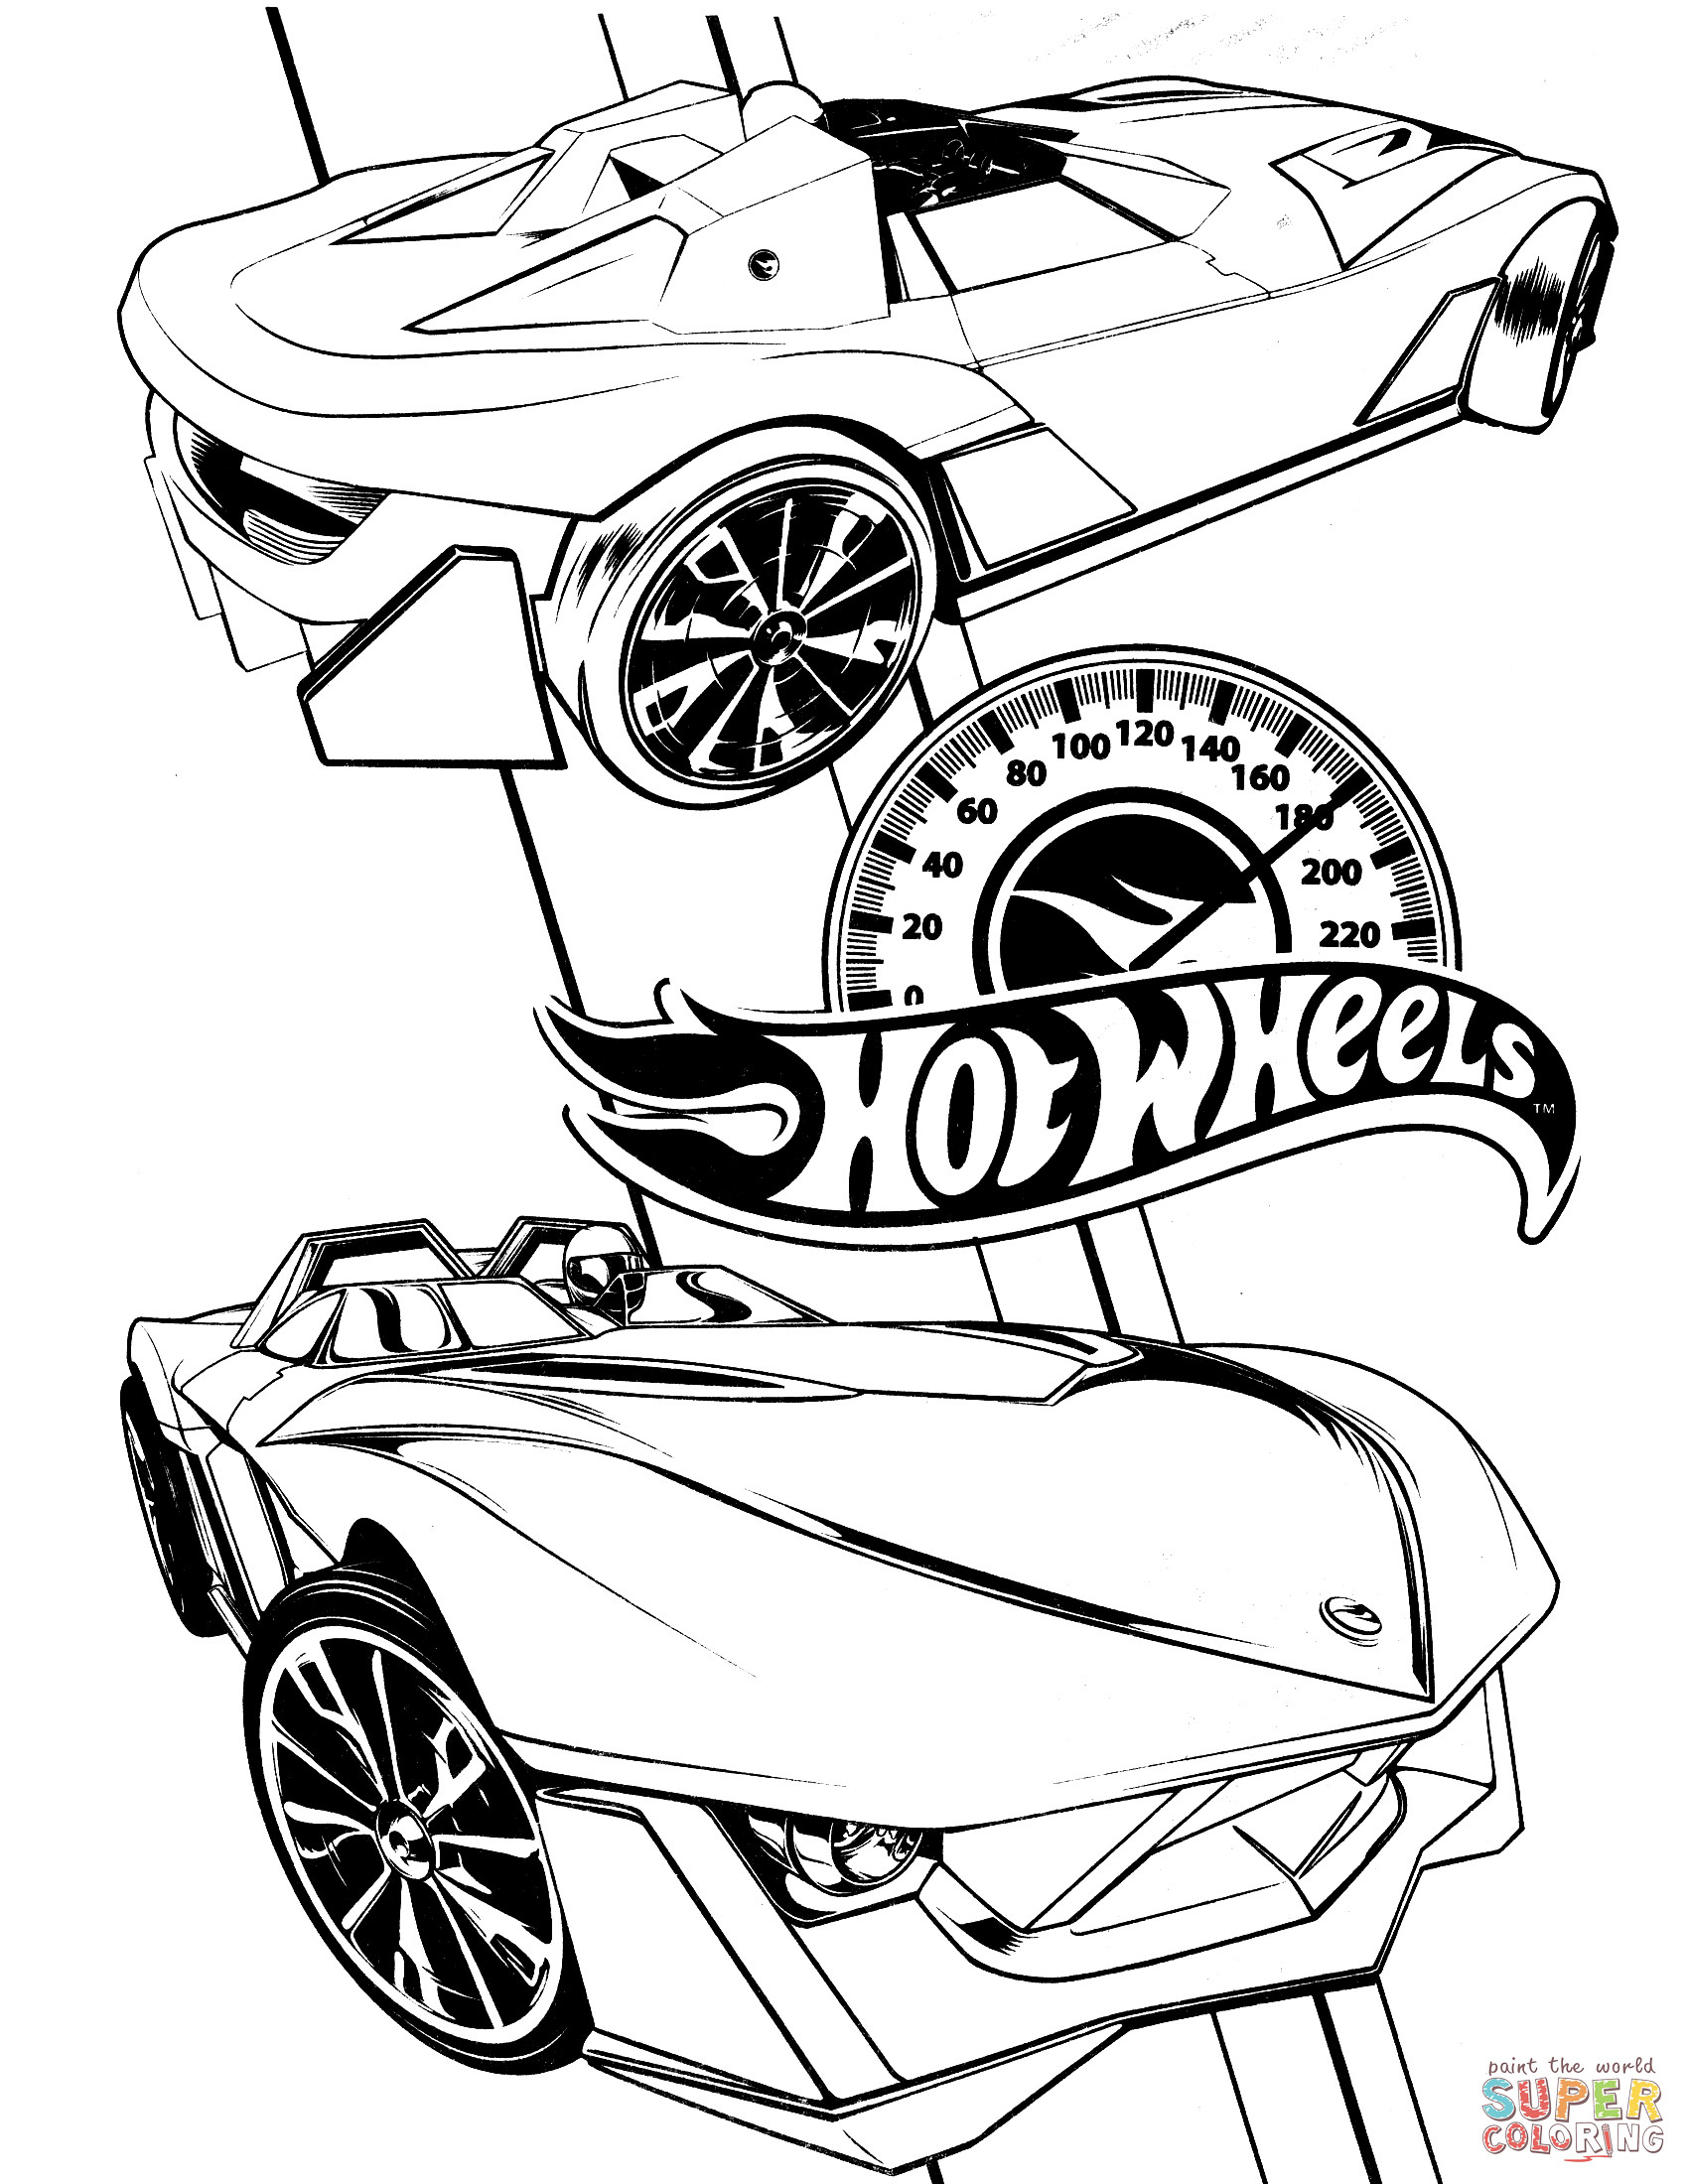 Ausmalbilder Hot Wheels
 Ausmalbild Hot Wheels